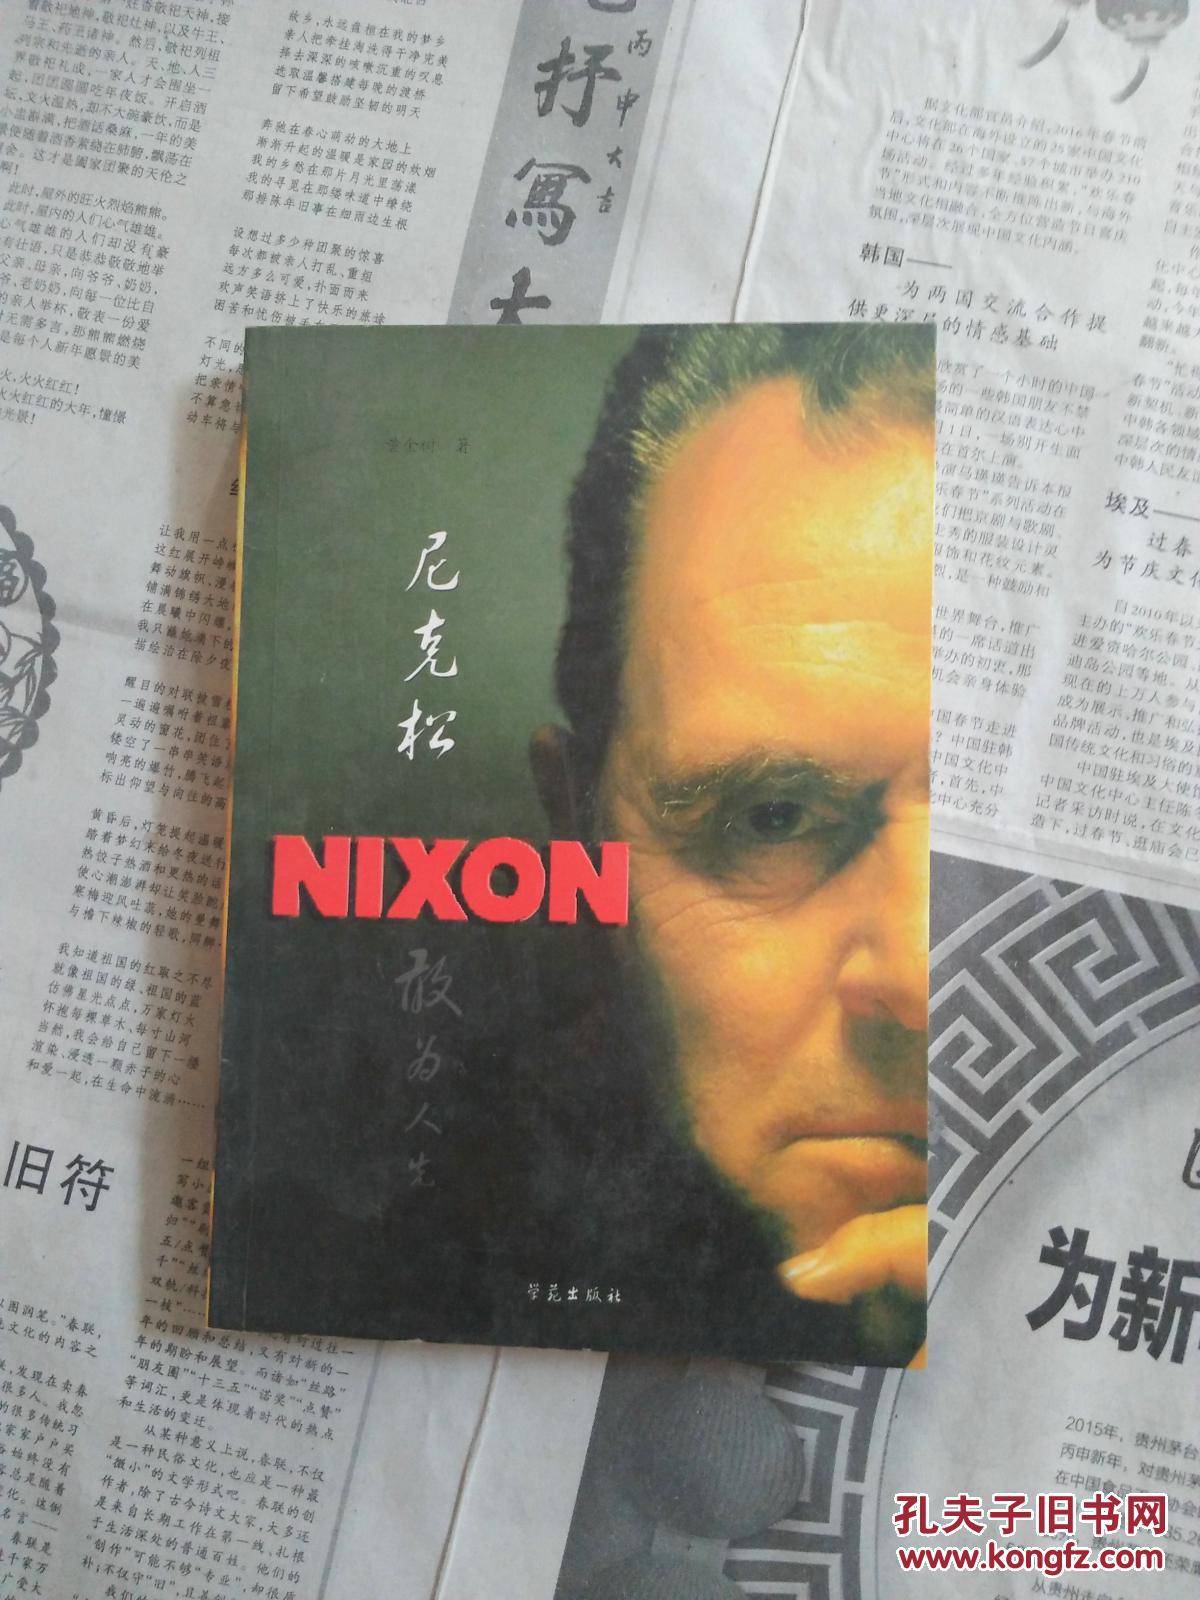 世界政坛风云人物尼克松